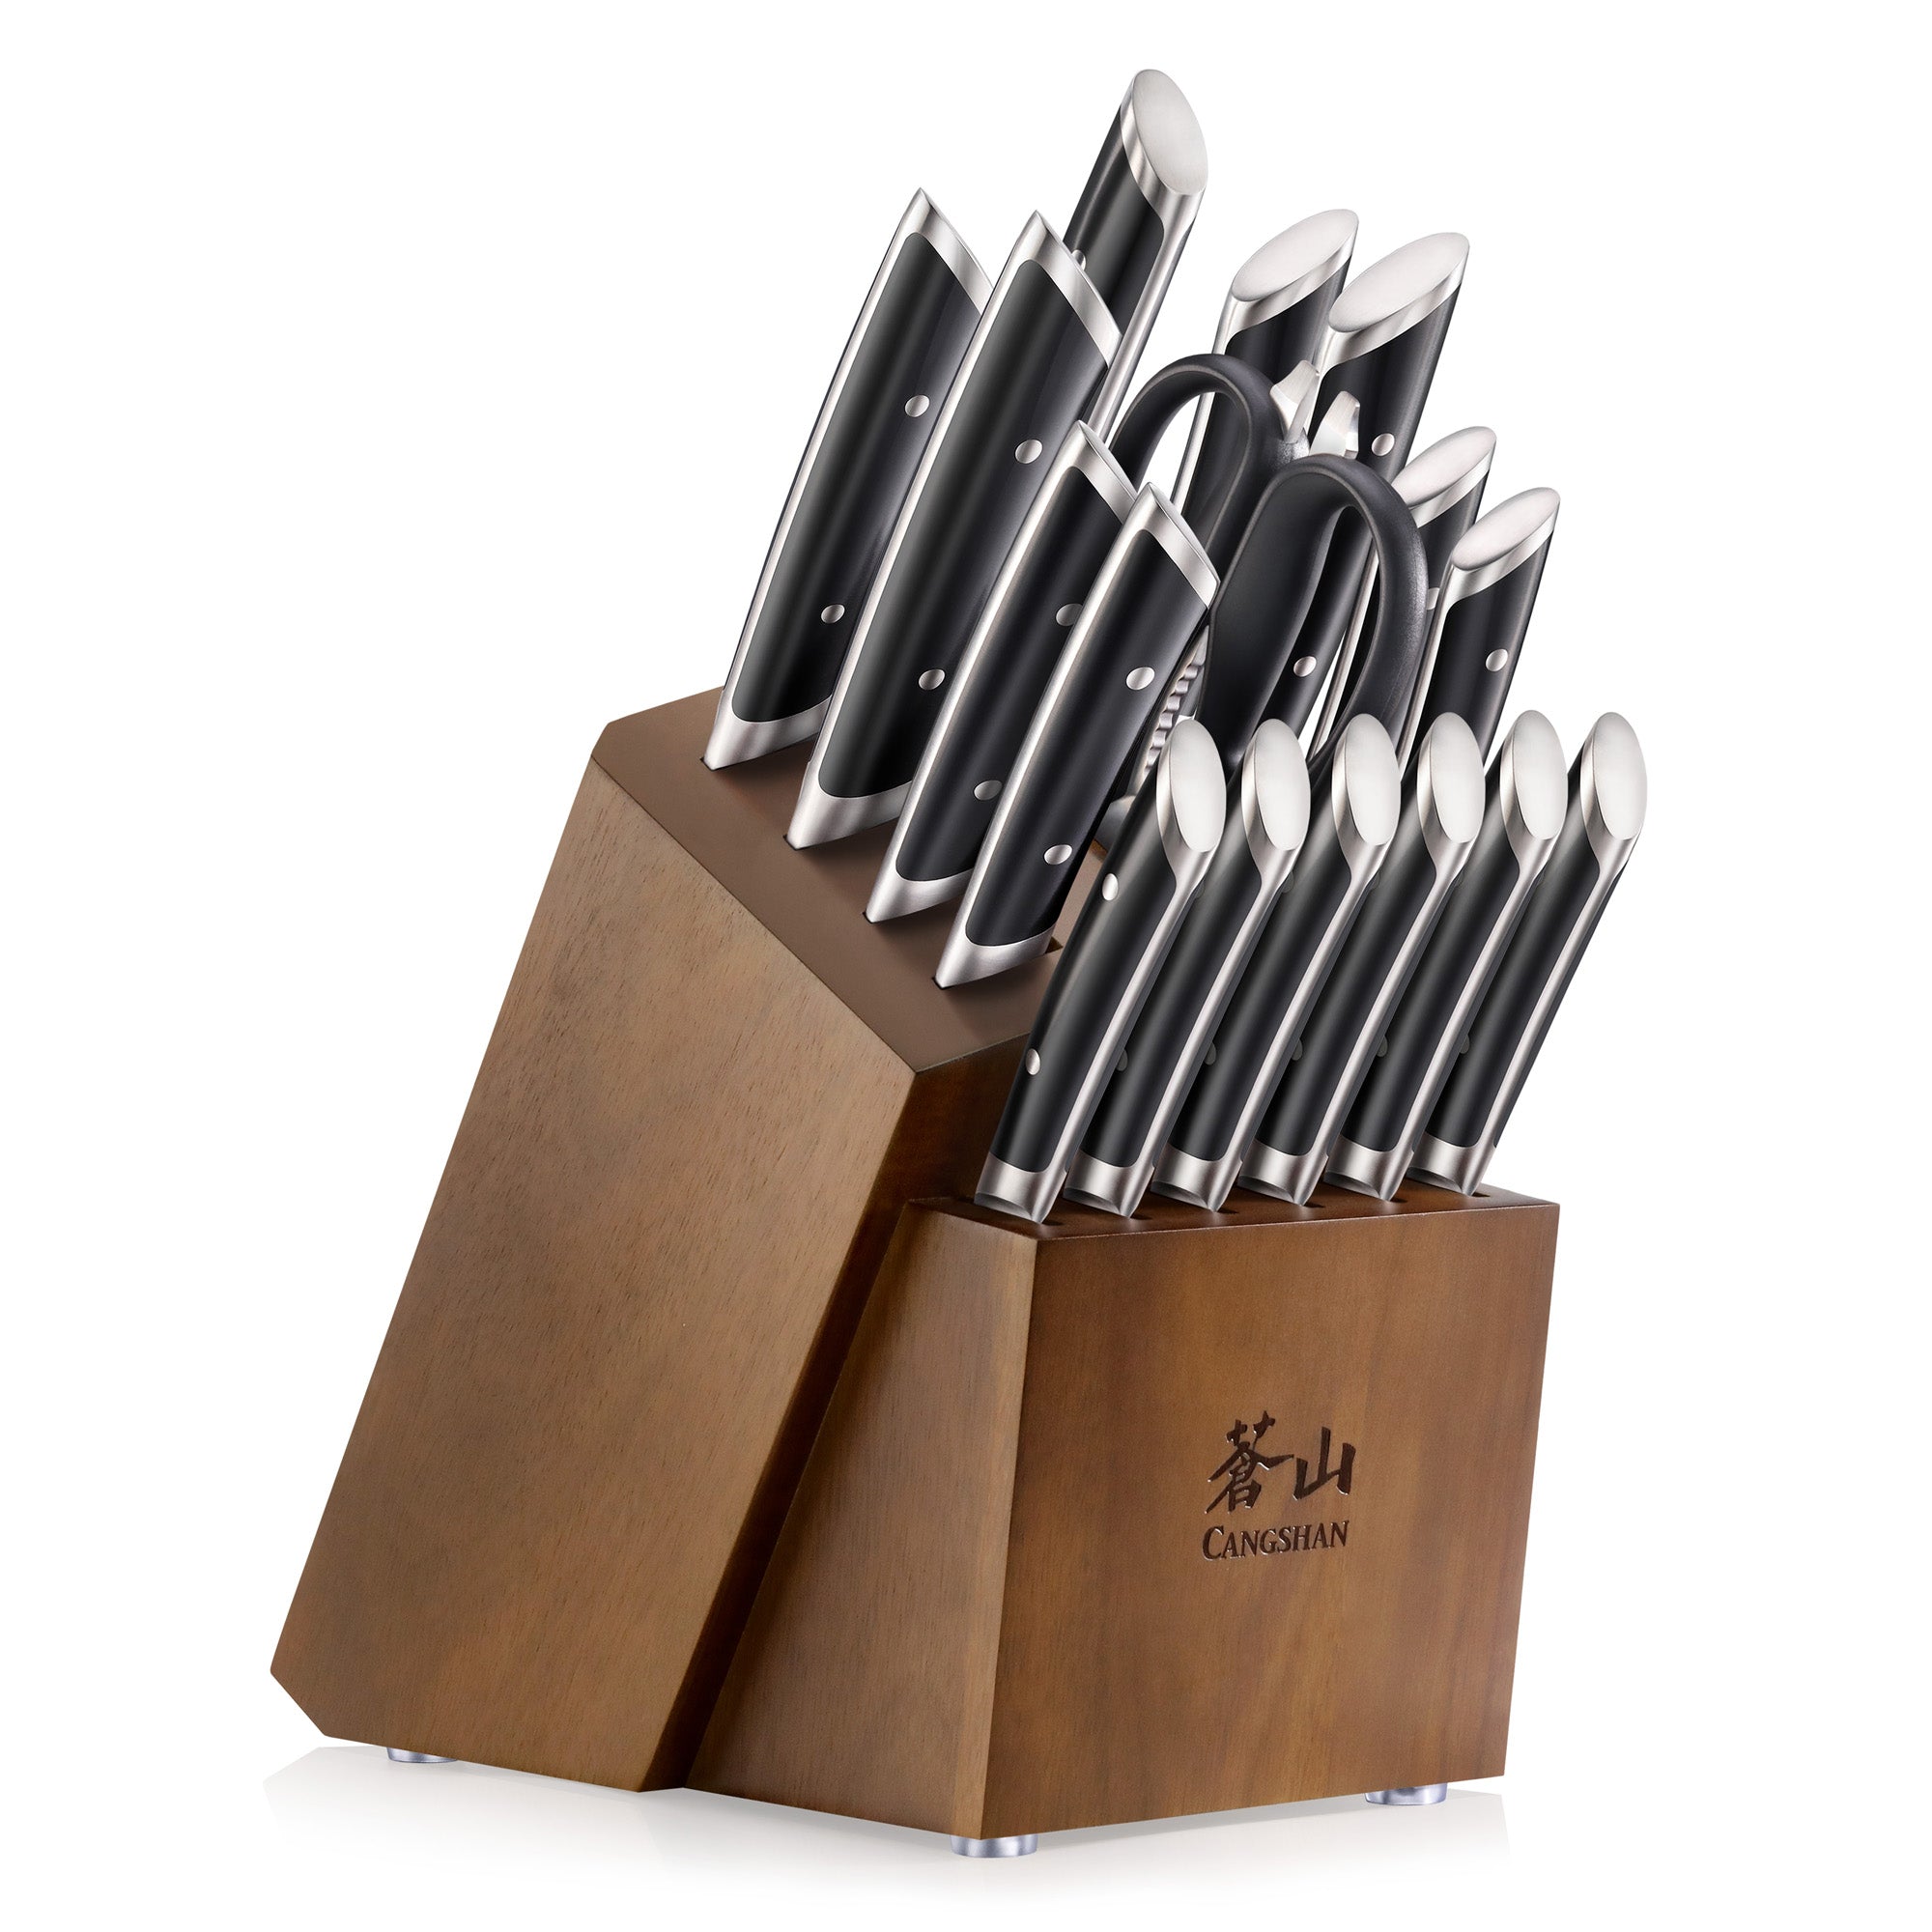 Cangshan HELENA Series German Steel 17-piece Knife Block Set, Black